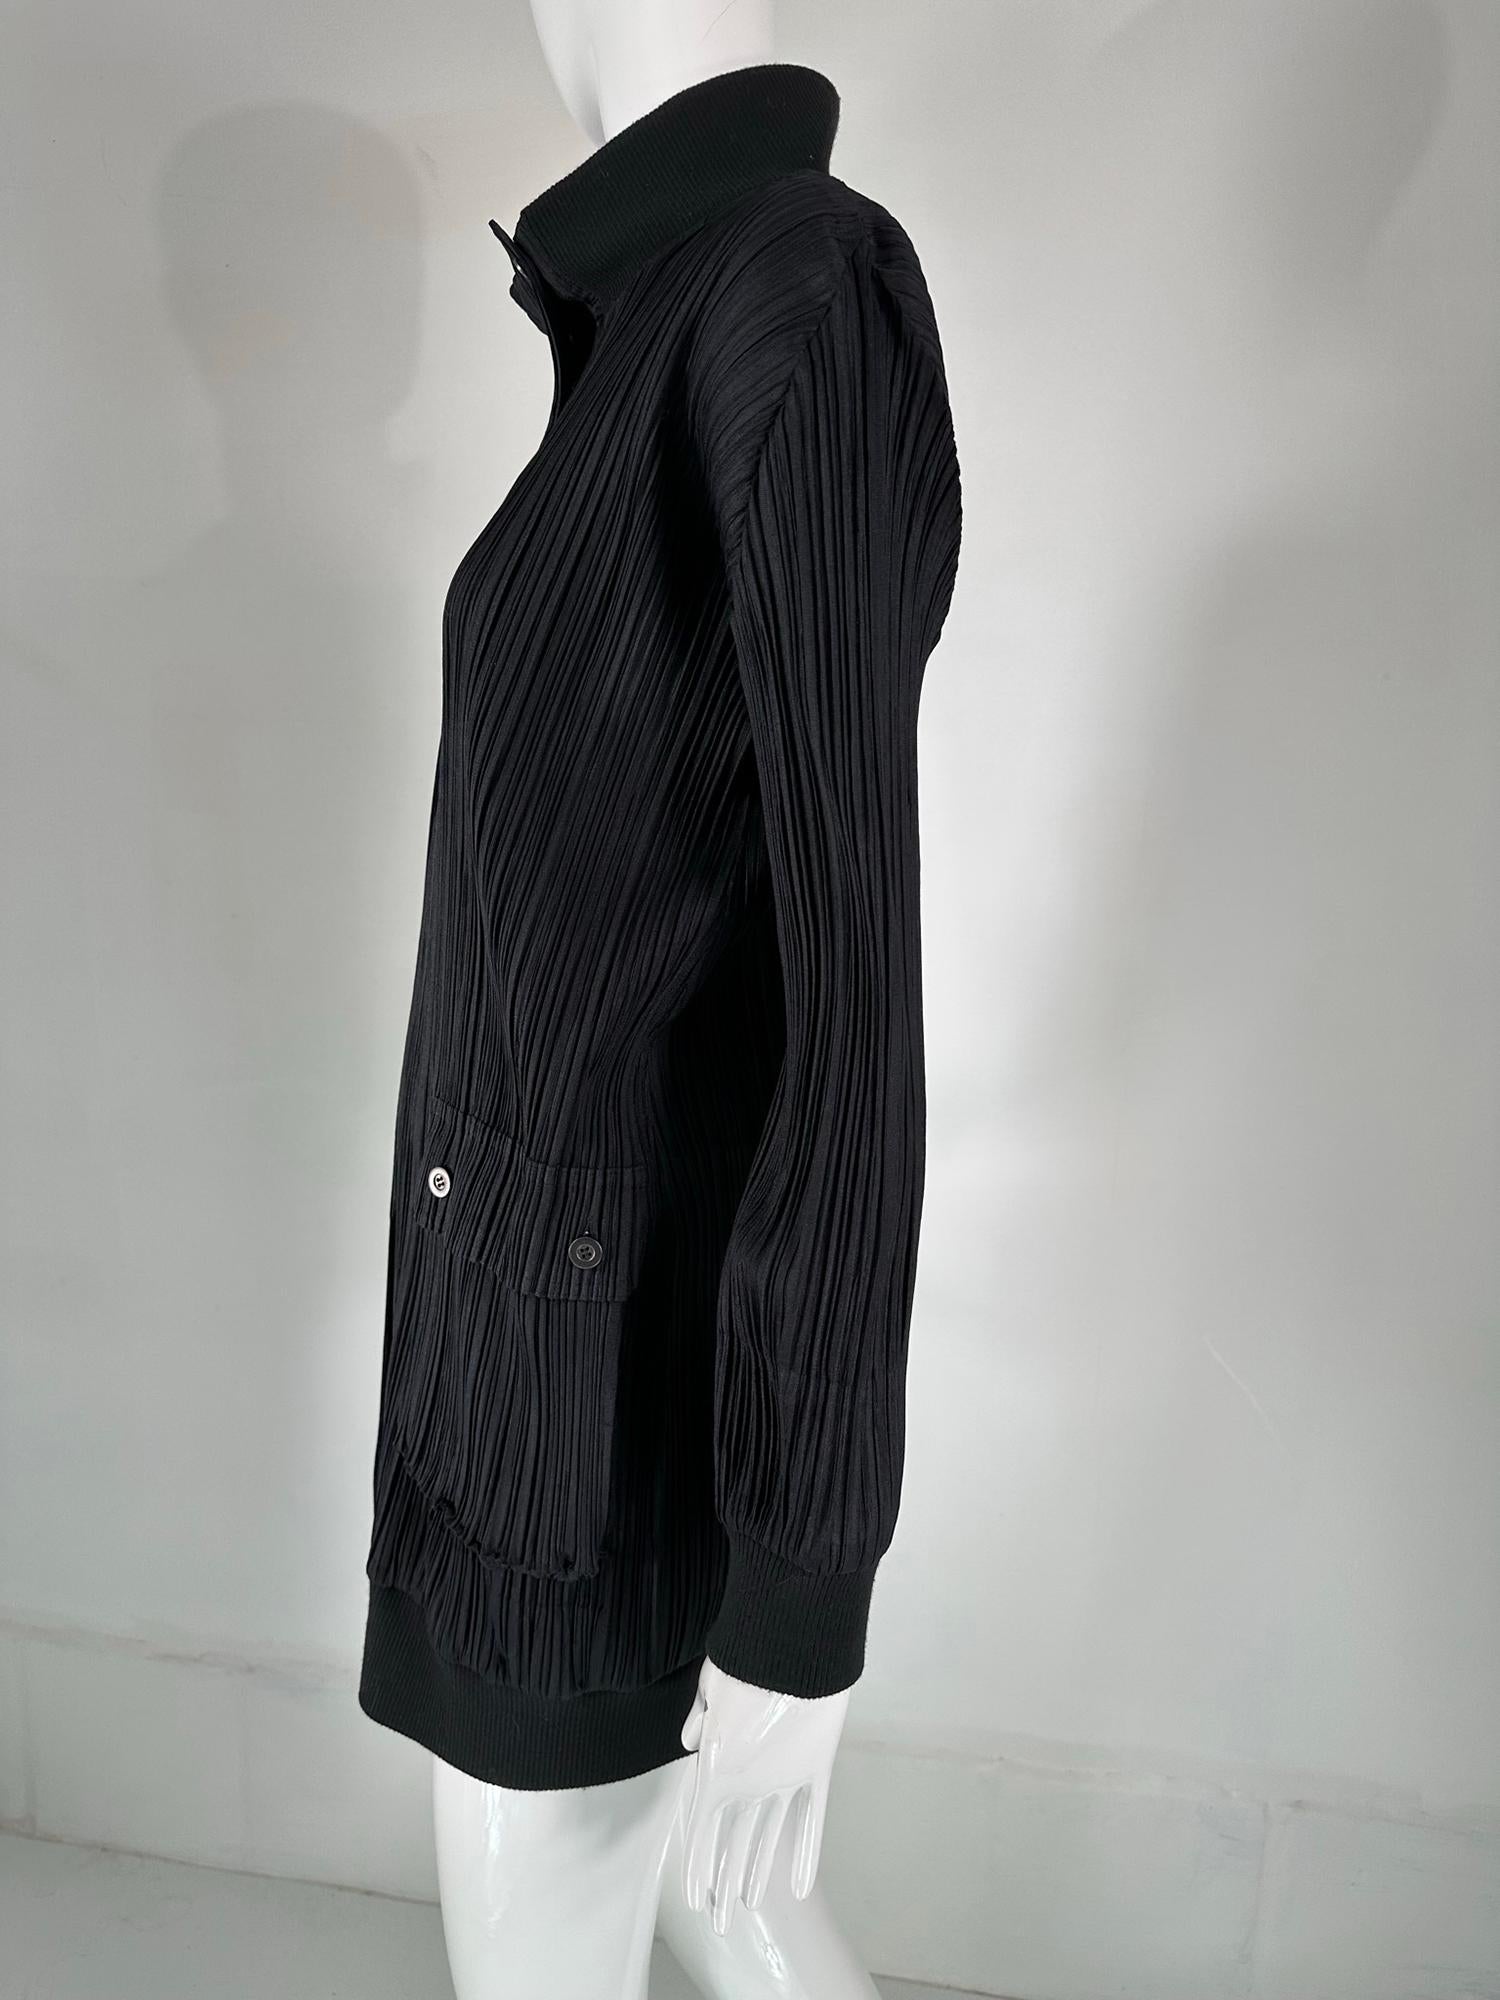 Women's or Men's Issey Miyake Pleats Please Black Funnel Neck Hidden Zipper Front Long Jacket 3 For Sale